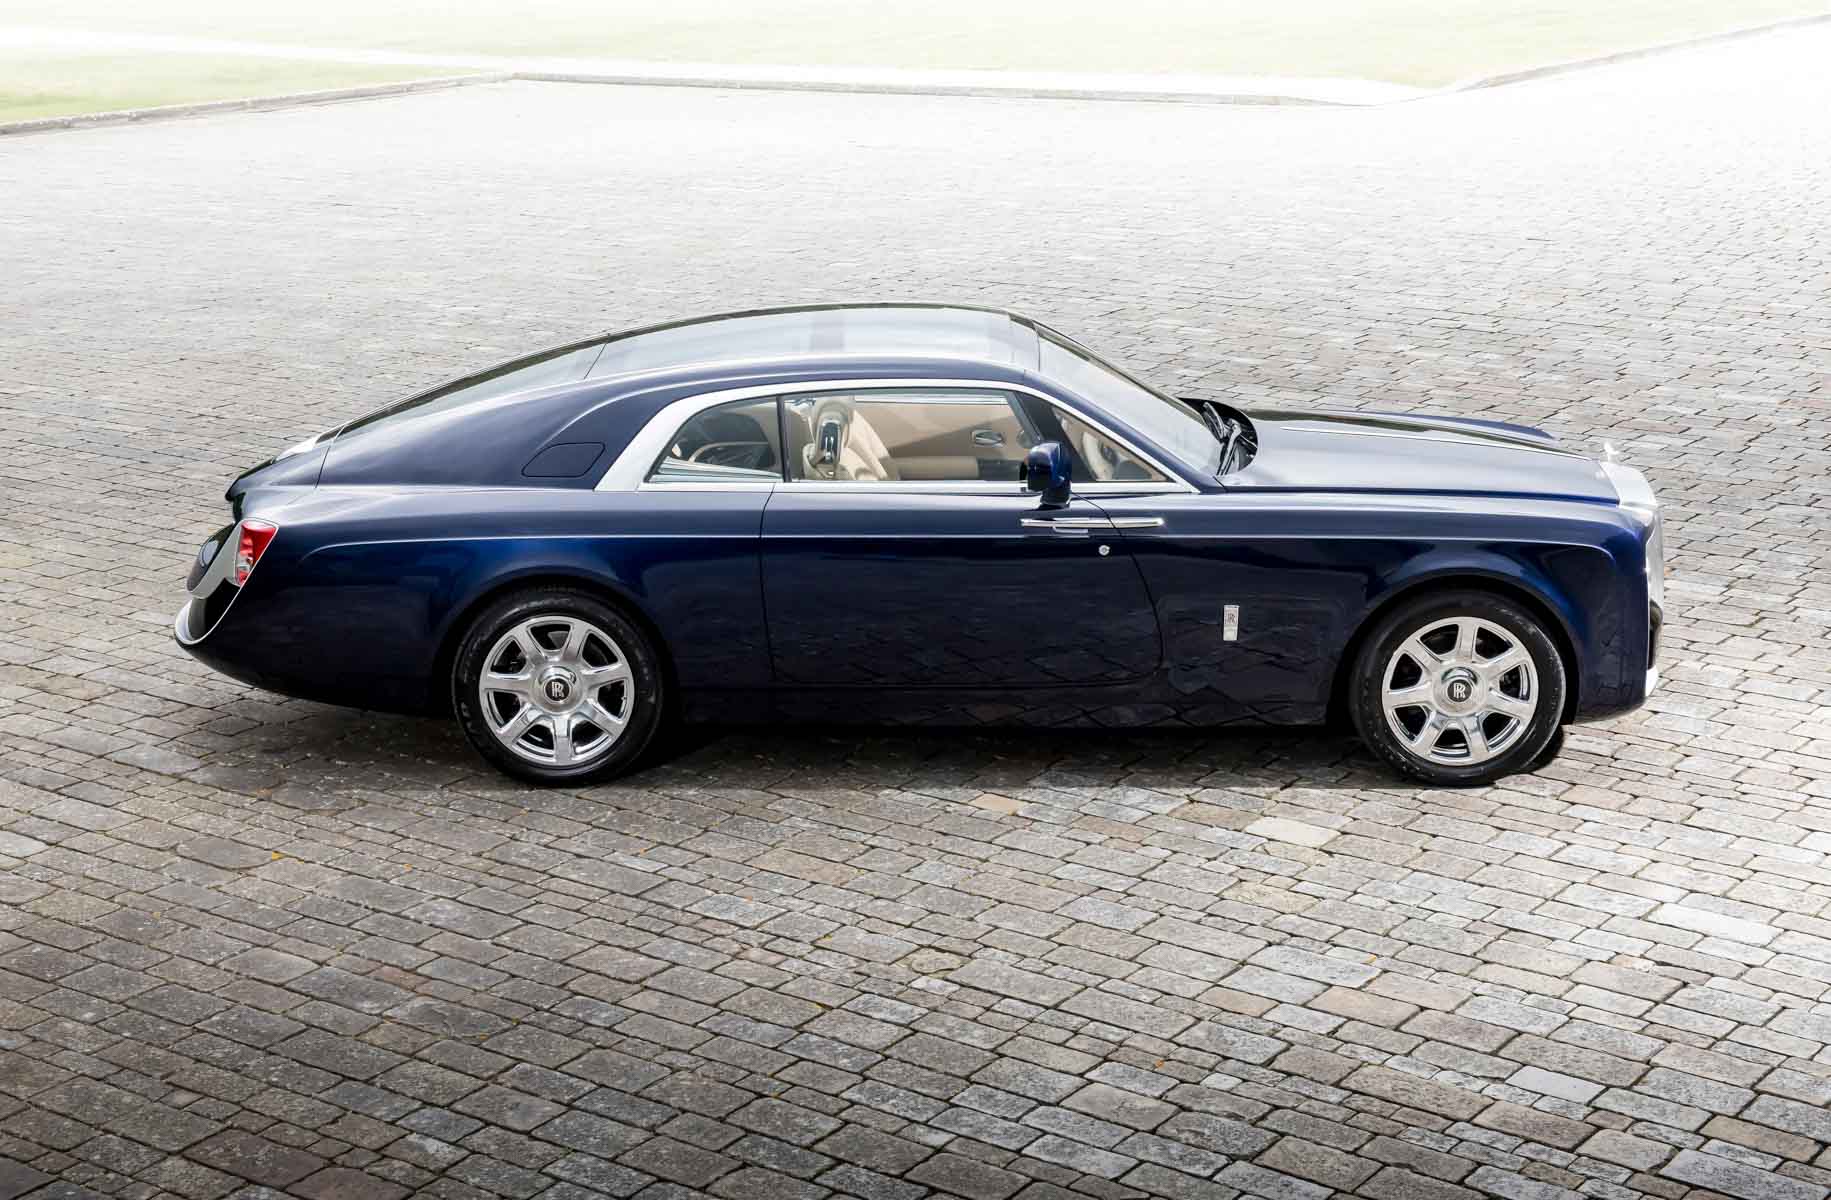 Rolls-Royce-Sweptail